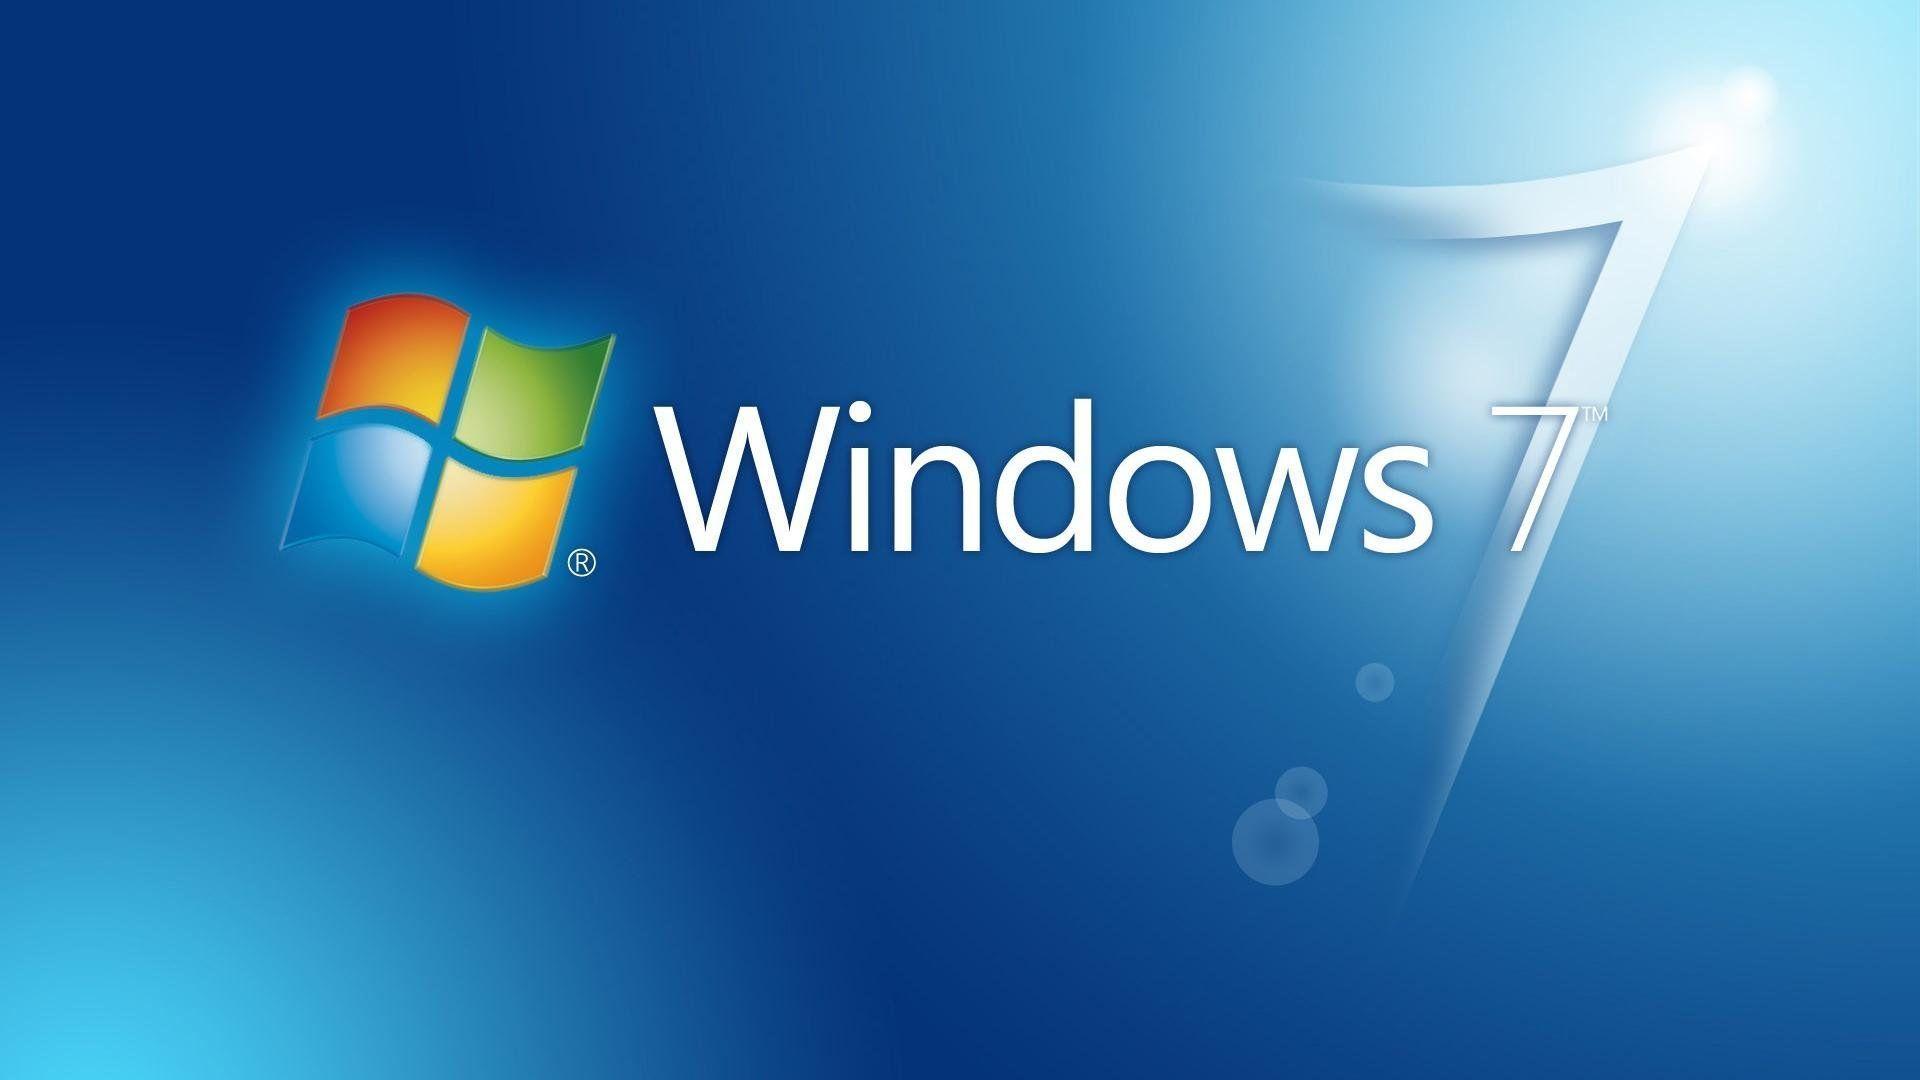 Cập nhật cho máy tính của bạn với những bức ảnh phông nền Windows 7 miễn phí tuyệt đẹp. Tự do lựa chọn giữa các chủ đề, hình nền đa dạng, đem lại cho bạn sự tươi mới và độc đáo, tạo ra không gian làm việc và giải trí đặc biệt cho bạn.